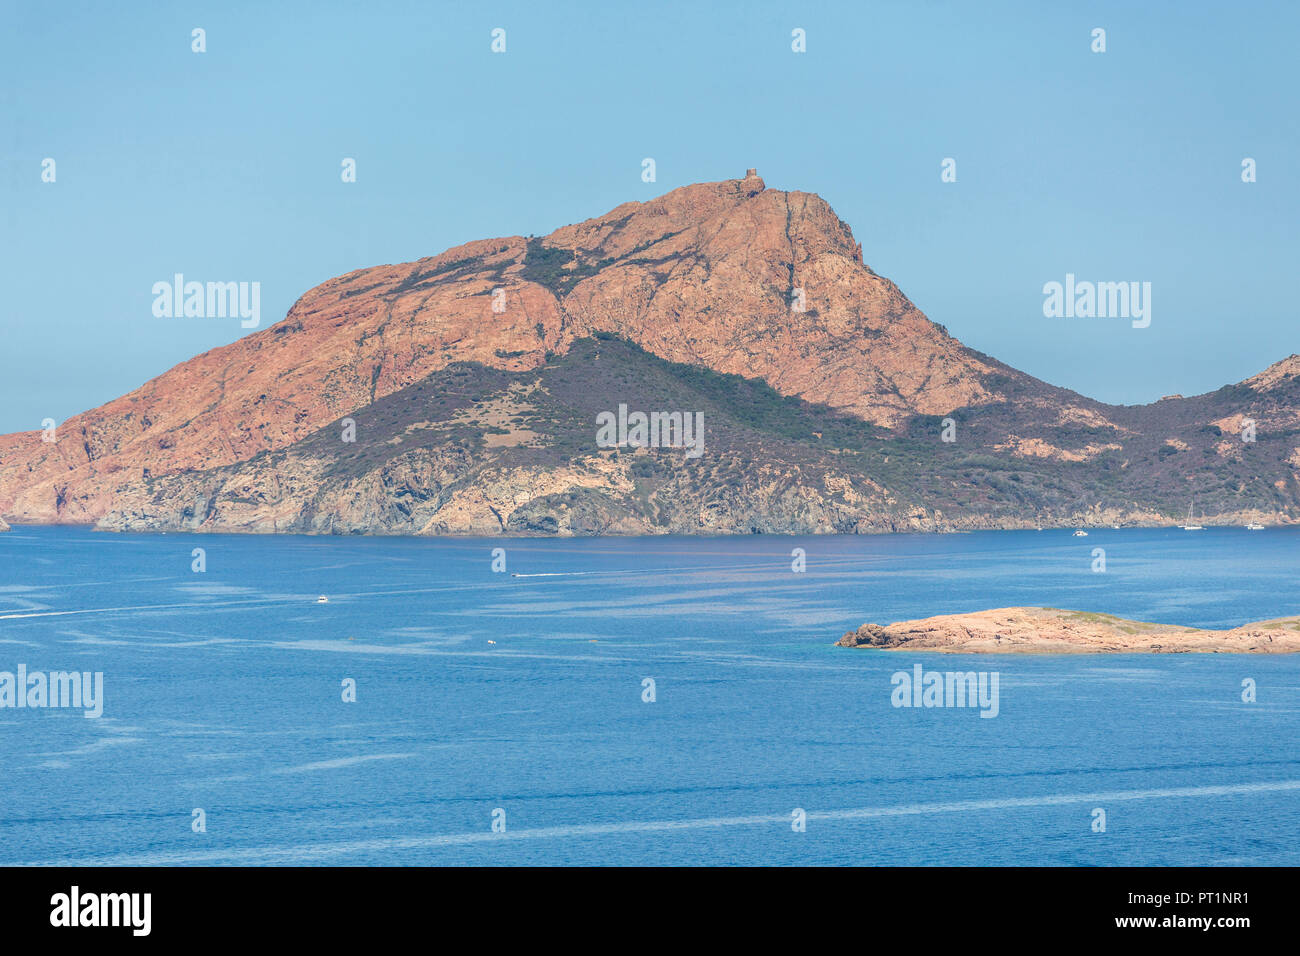 Pic rocheux de Capu Rossu, Cargèse, Corse, France Banque D'Images